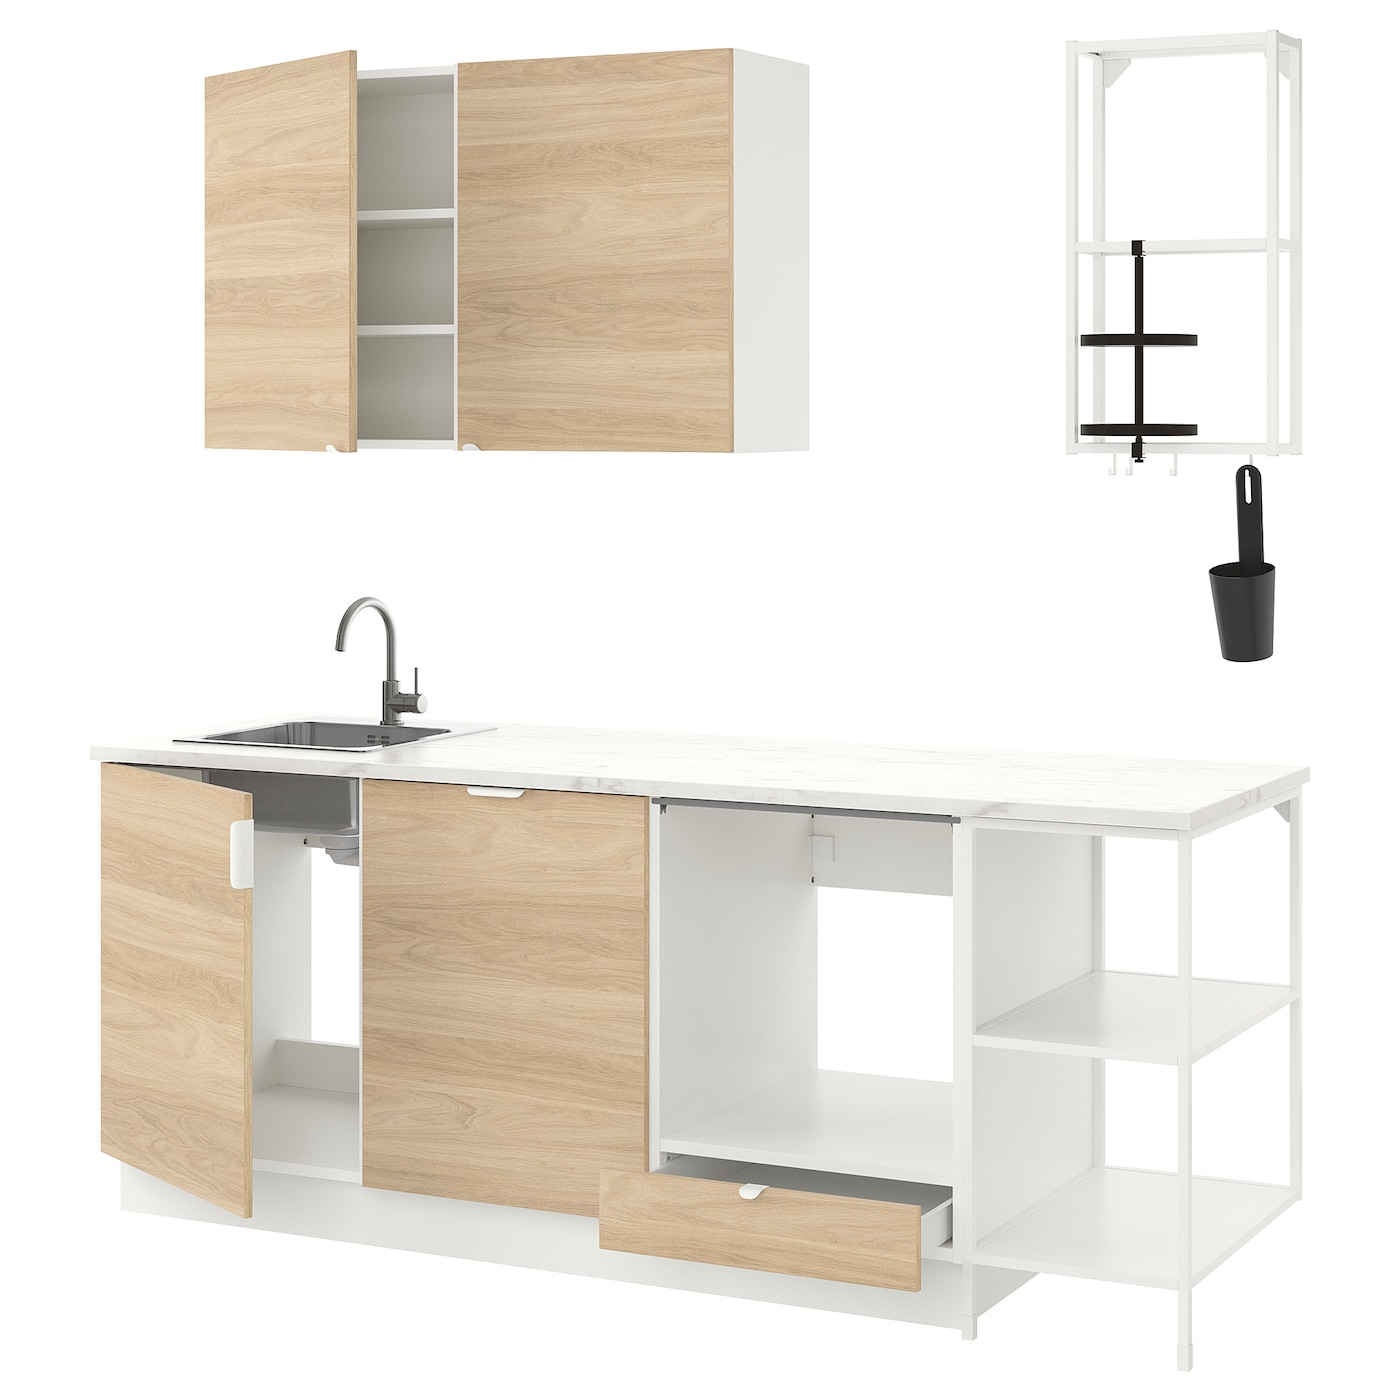 Комбинация для кухонного хранения  - ENHET  IKEA/ ЭНХЕТ ИКЕА, 223x63,5x222 см, белый/бежевый